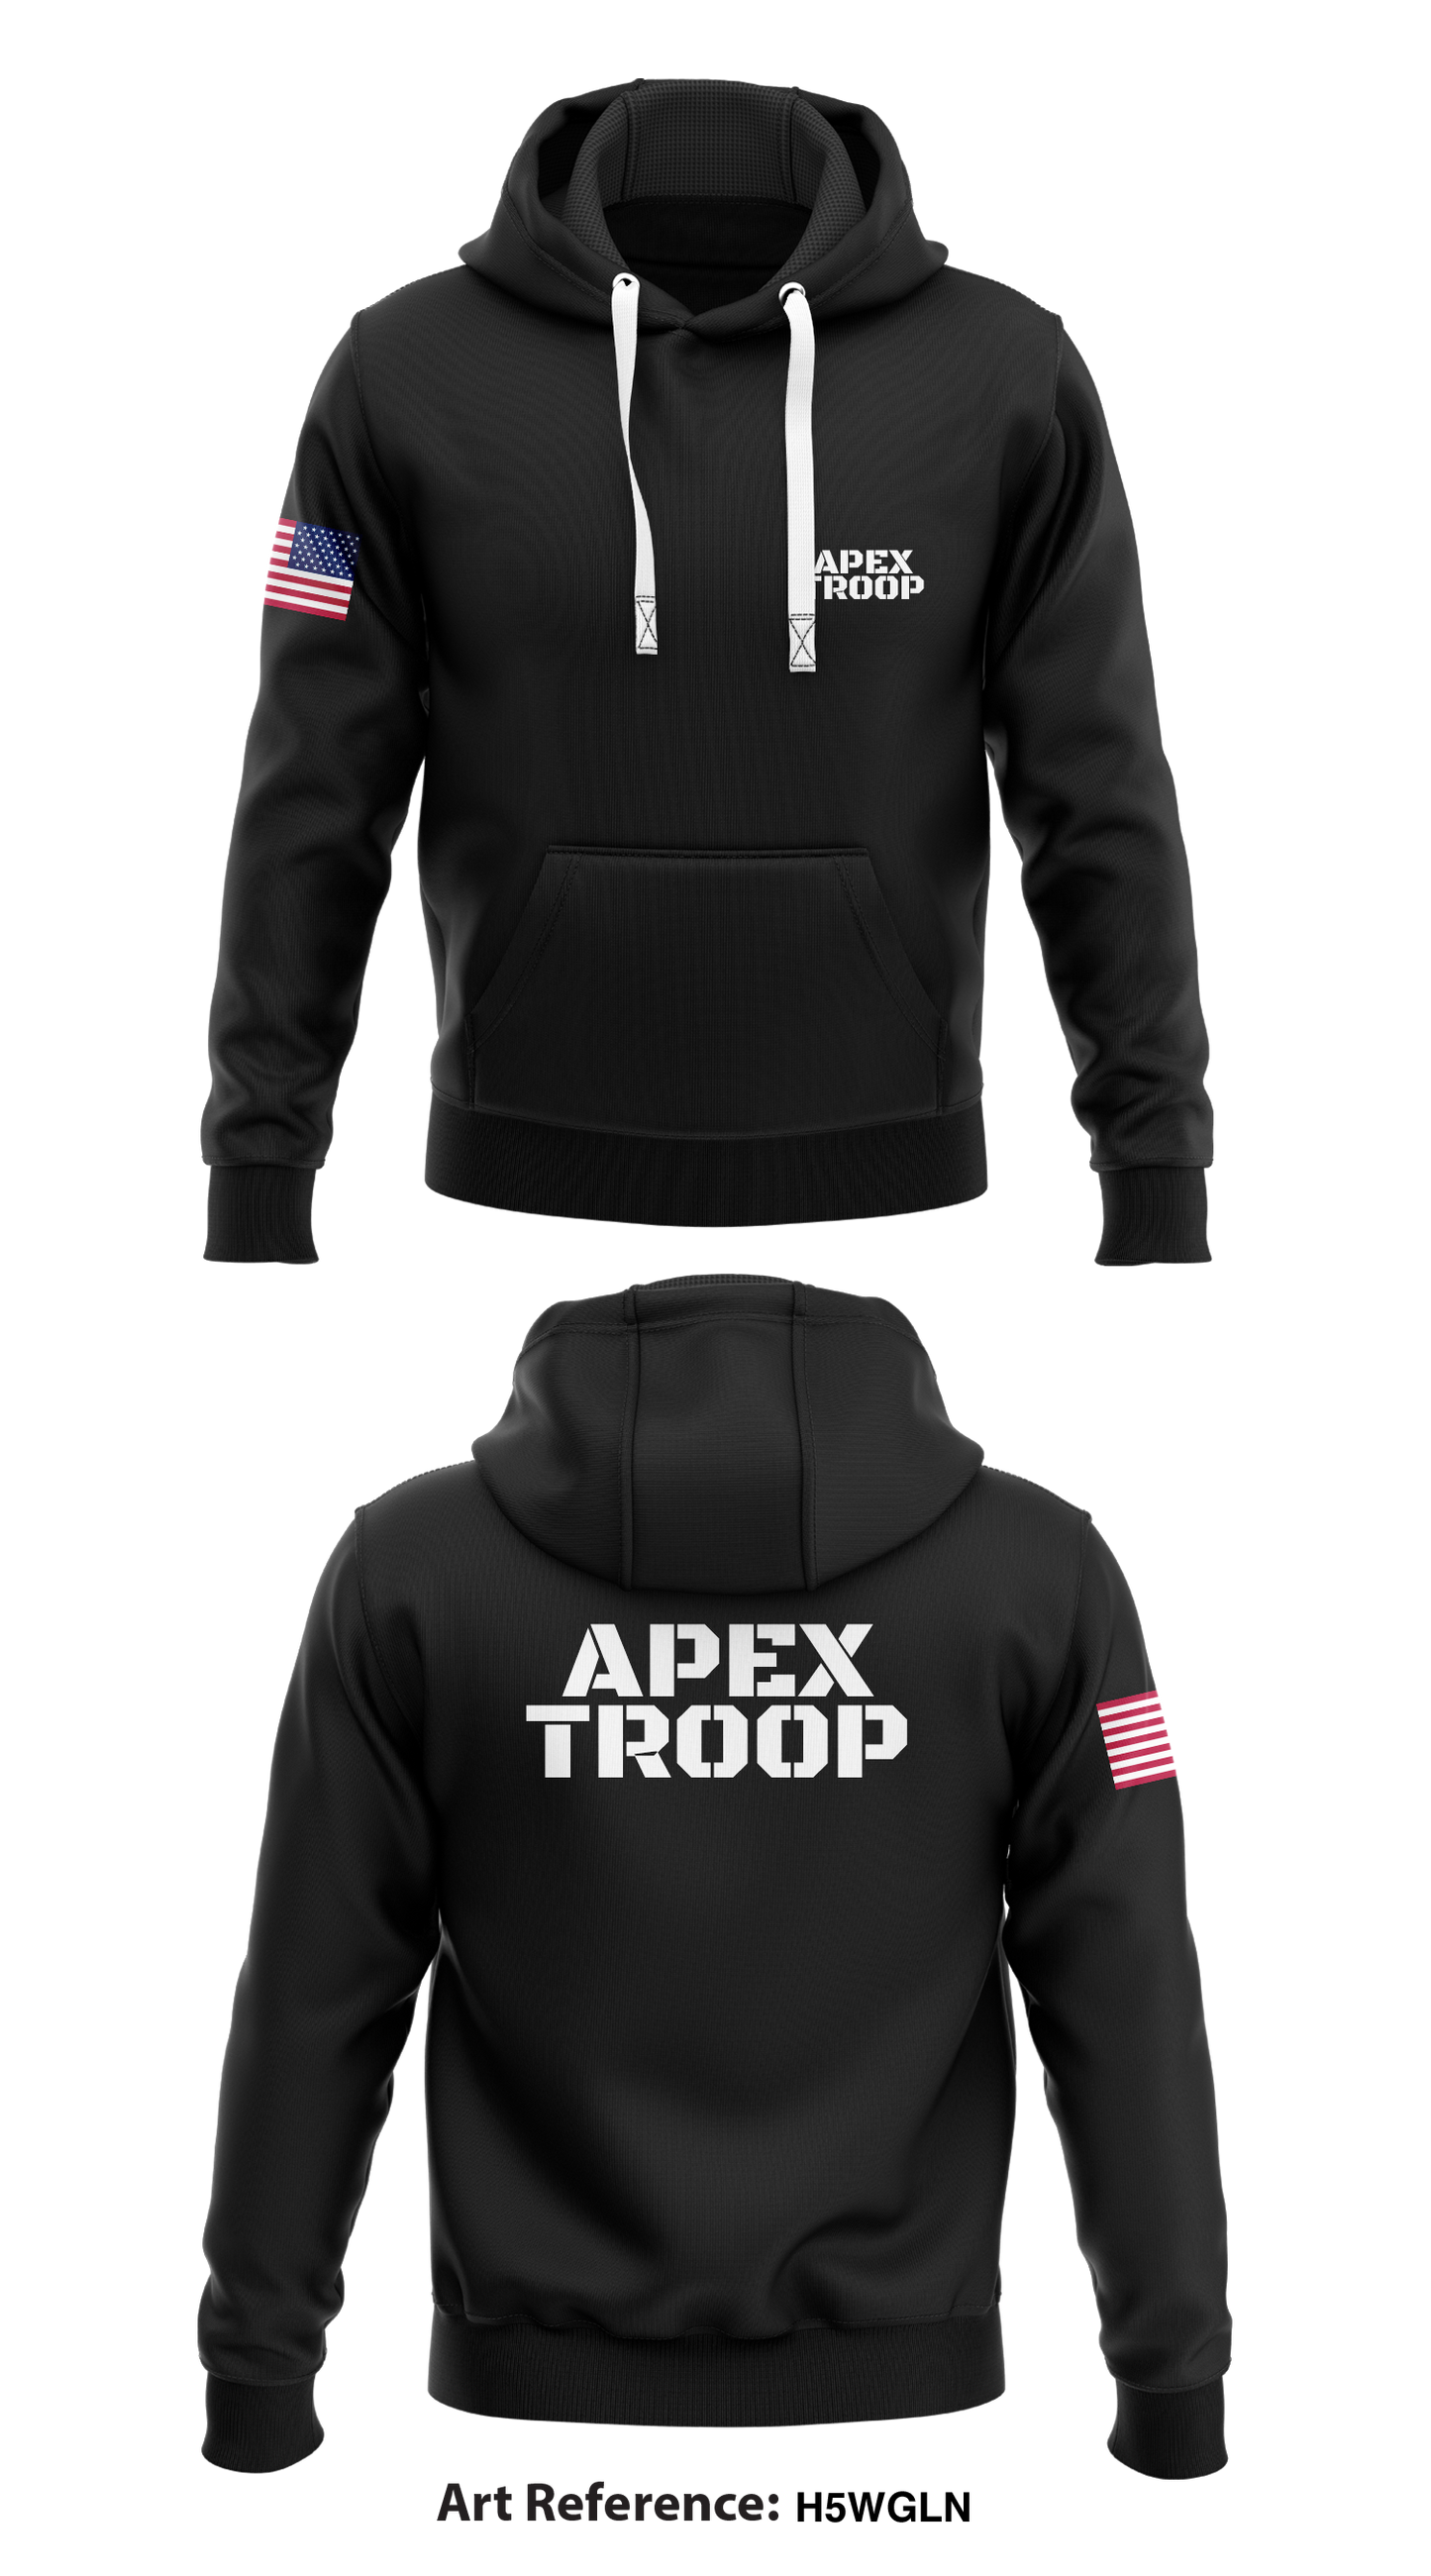 Apex troop Store 1  Core Men's Hooded Performance Sweatshirt - H5wGLN